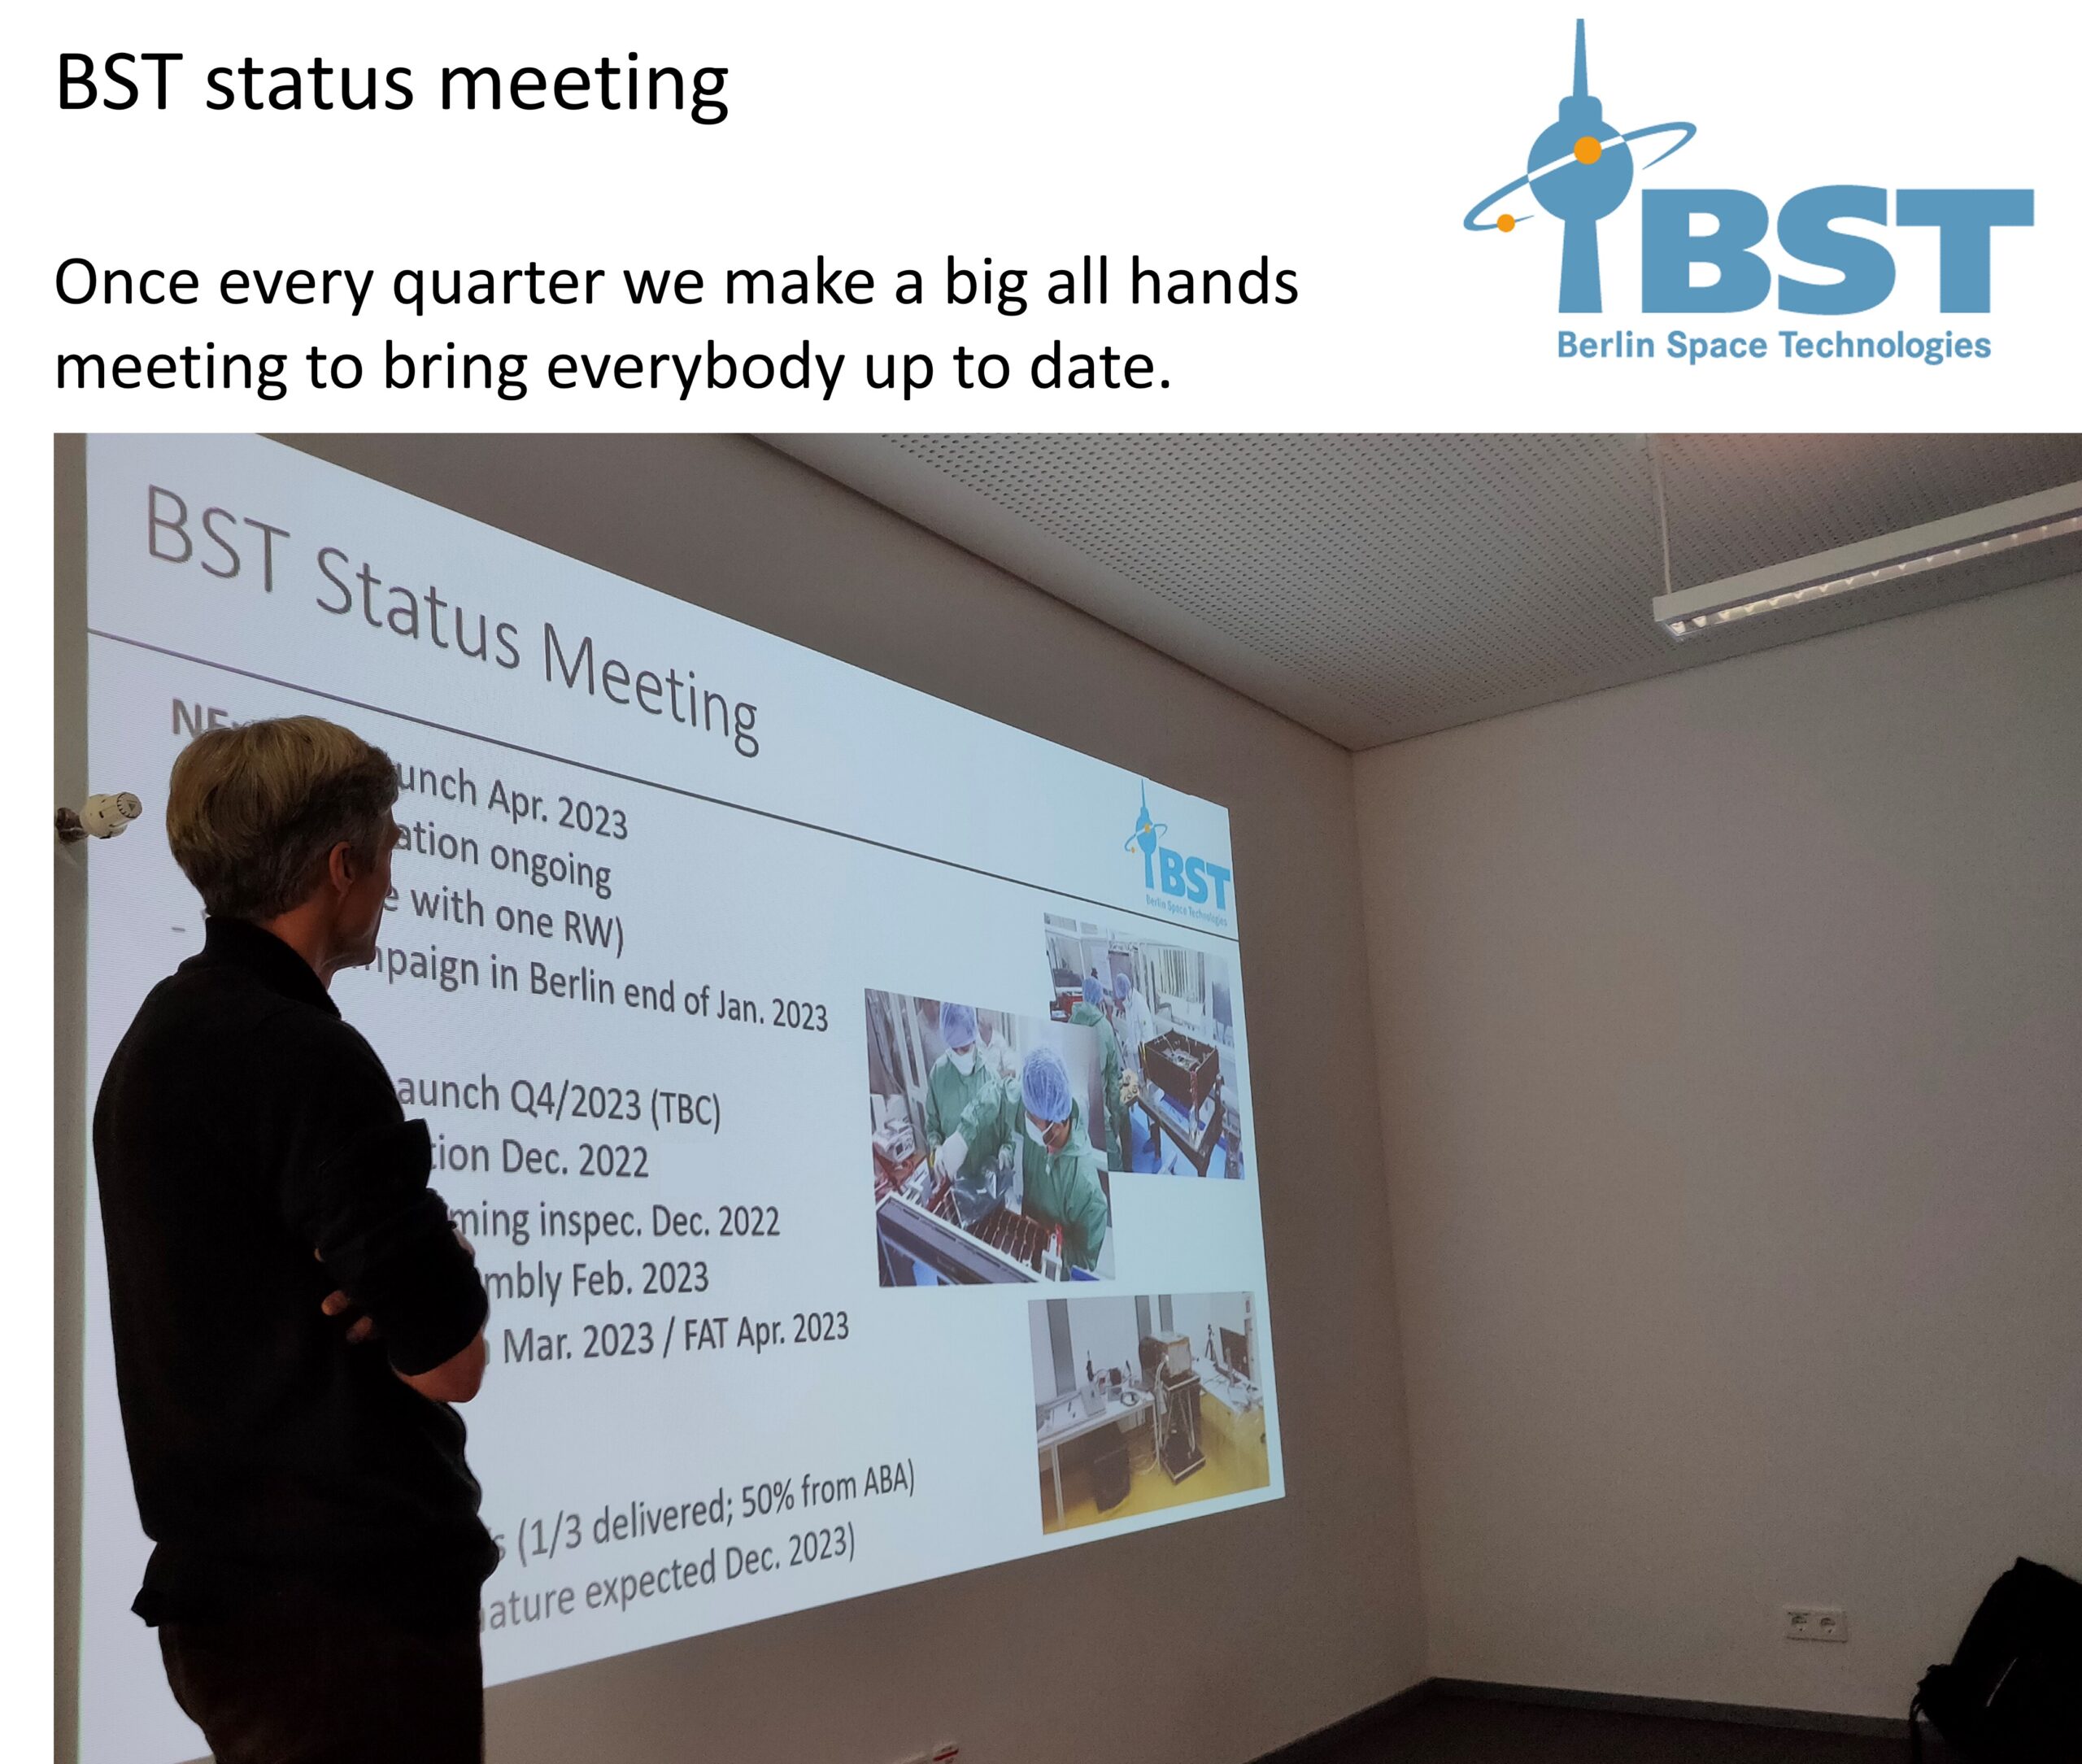 BST Status Meeting